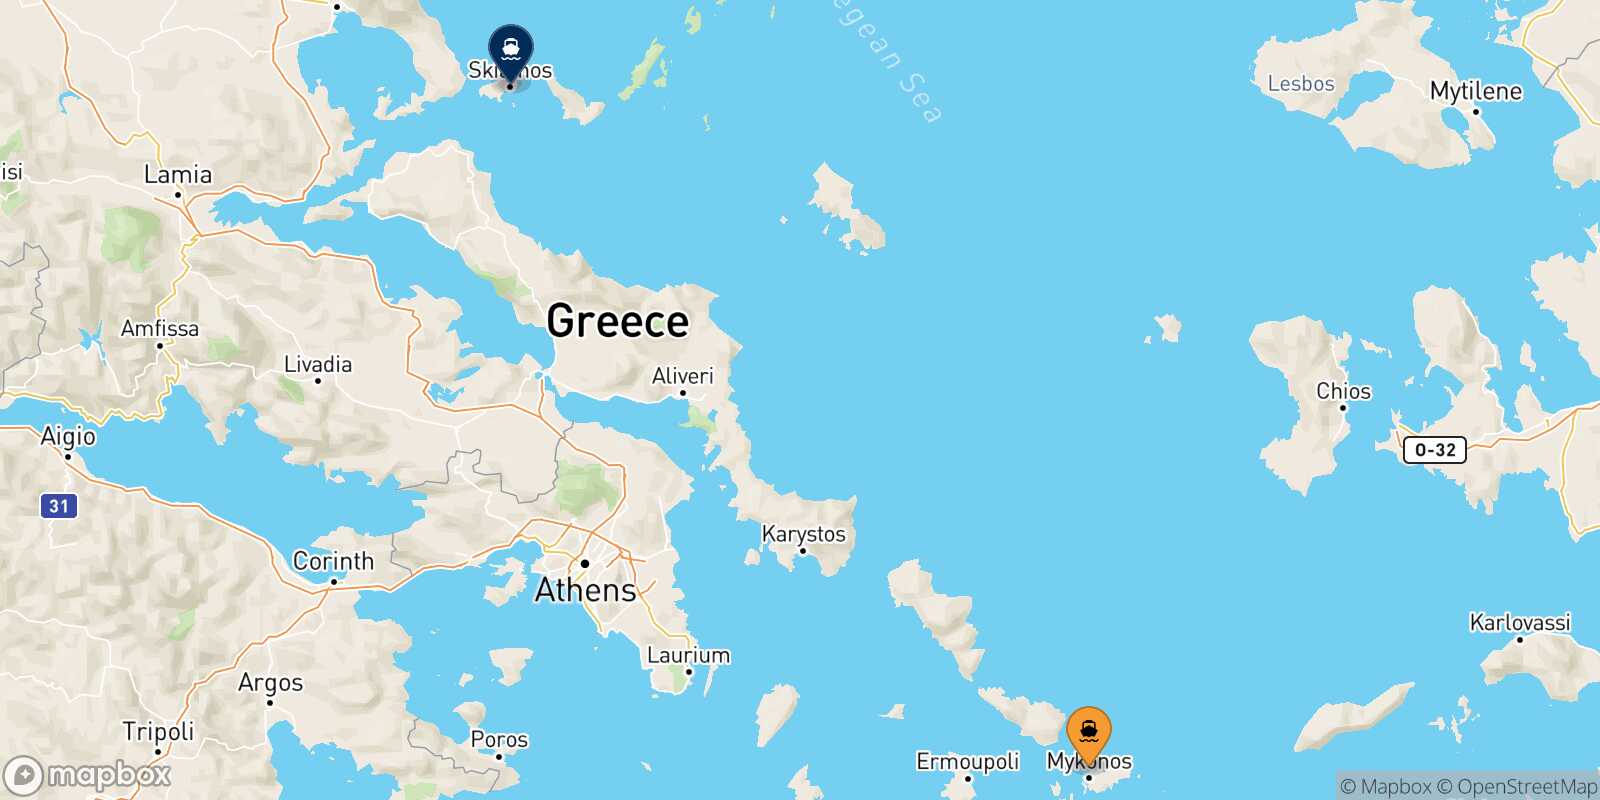 Mappa delle destinazioni raggiungibili da Mykonos